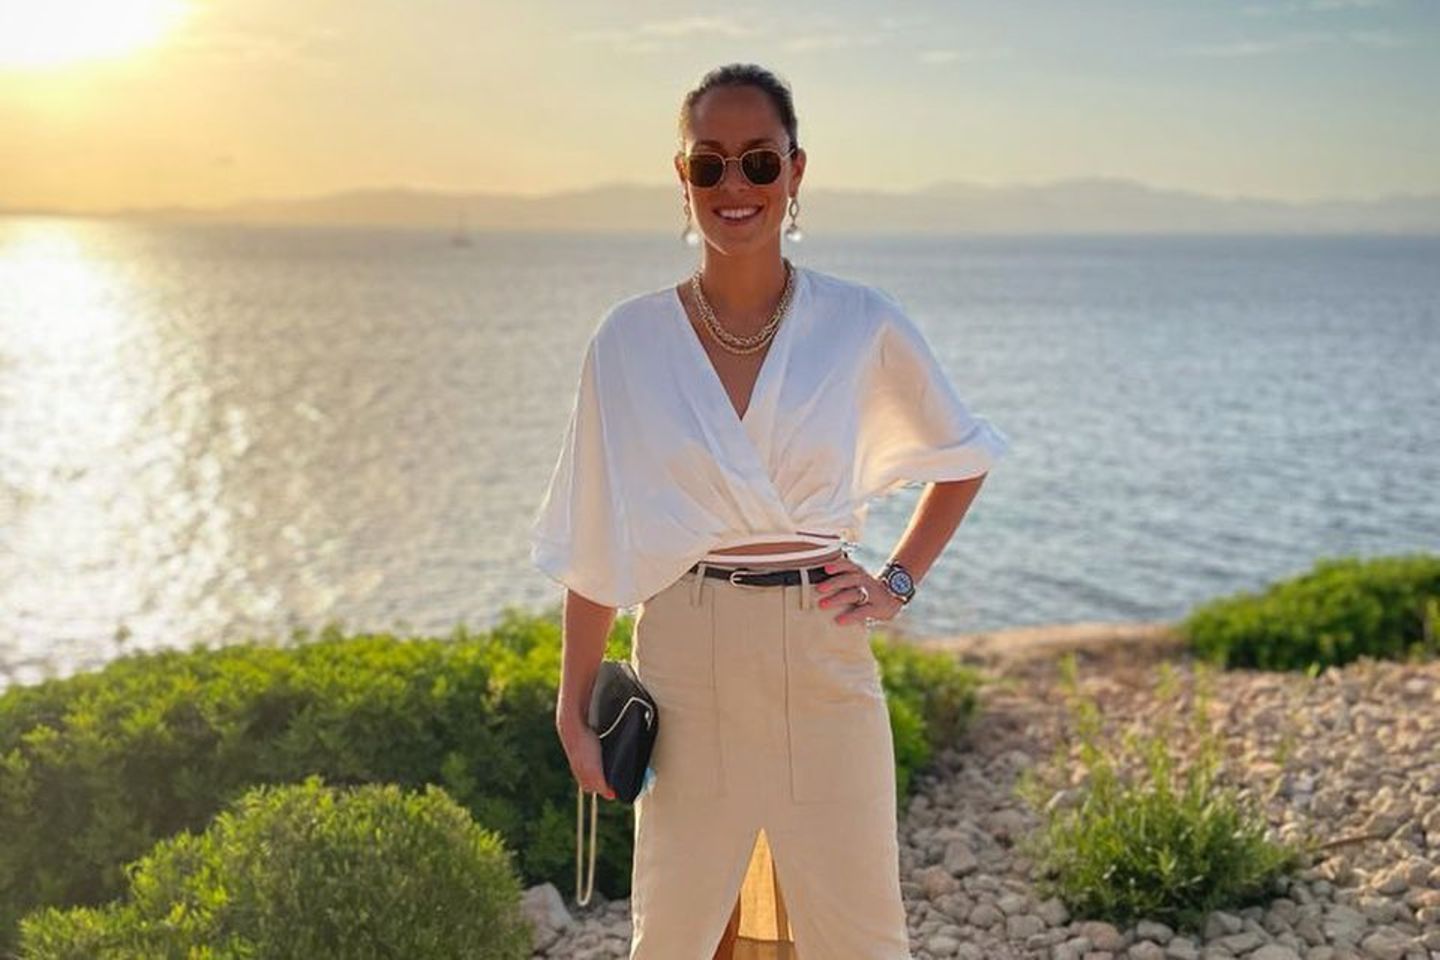 Vor einem wunderschönen Sonnenuntergang zeigt sich Ana Ivanovic wie gewohnt elegant in einer weißen Bluse und einem knielangen Bleistift-Rock mit Beinschlitz.